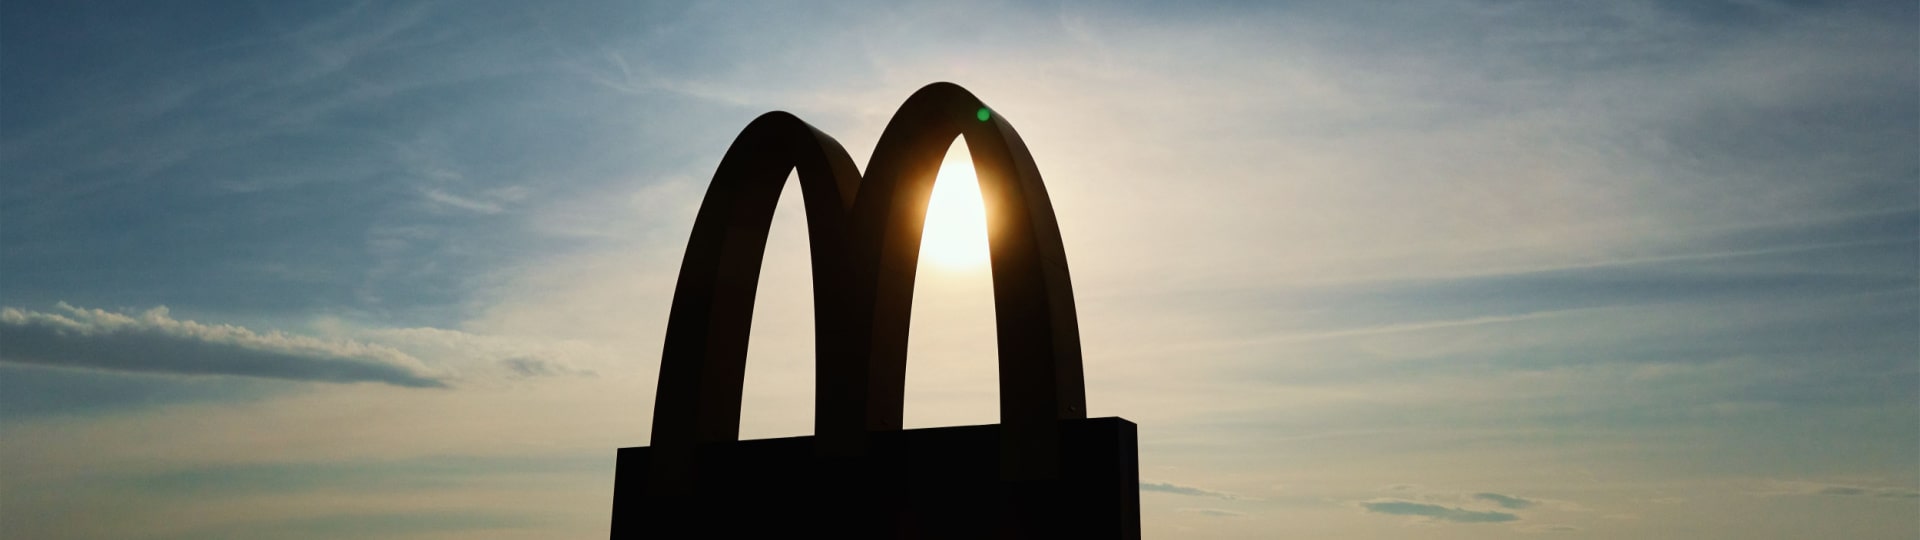 Zisk McDonald's ve čtvrtletí stoupl o 17 %